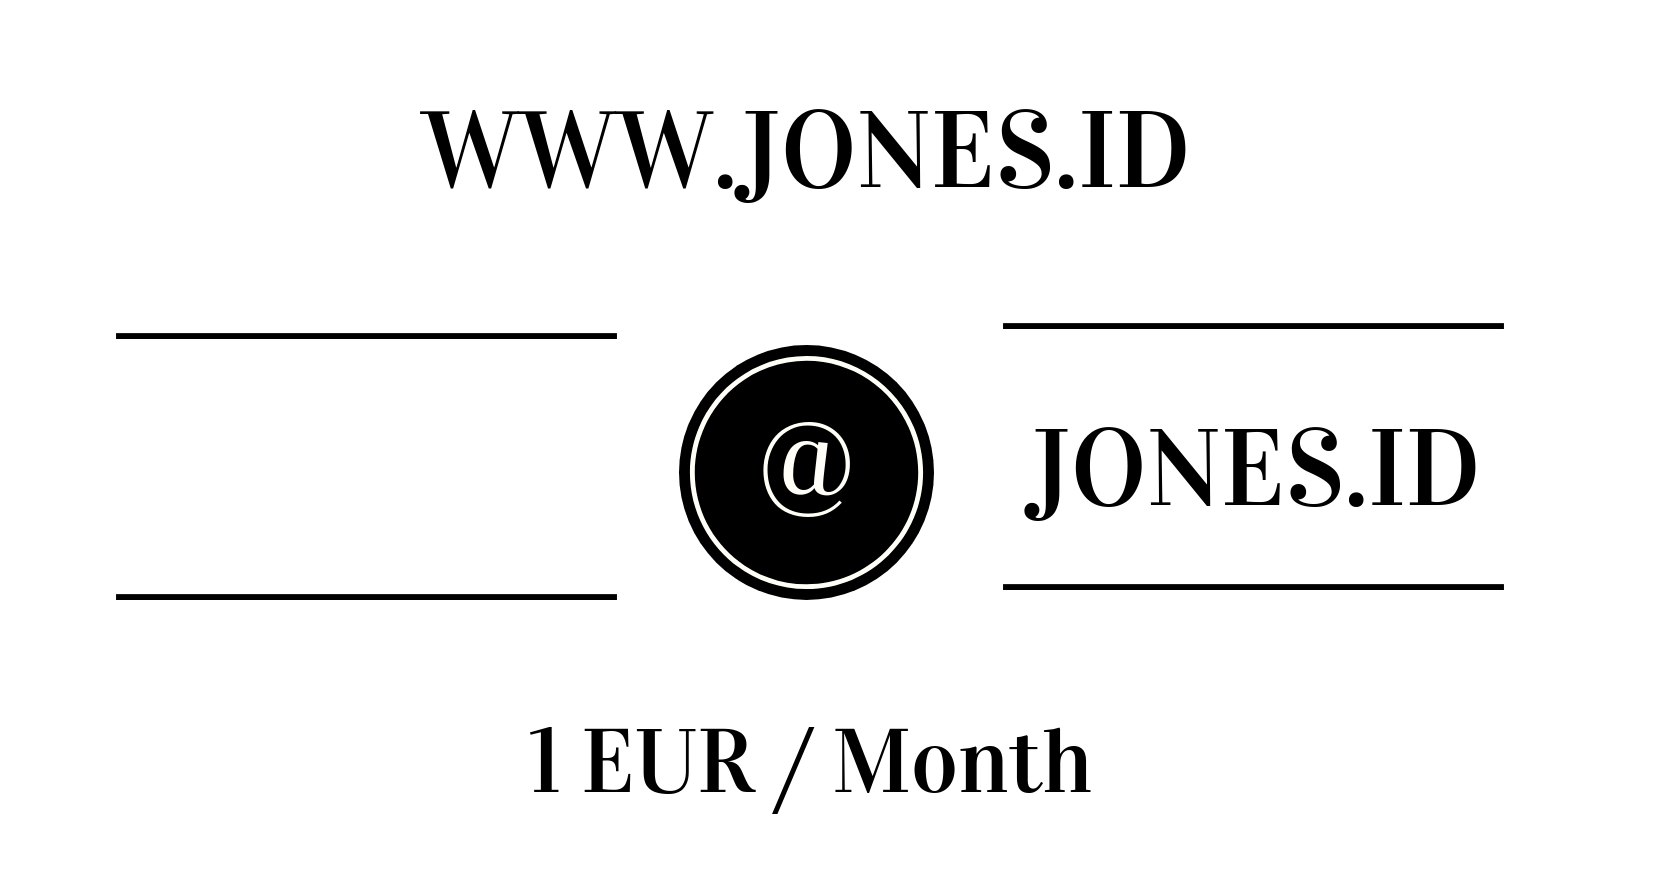 www.jones.id